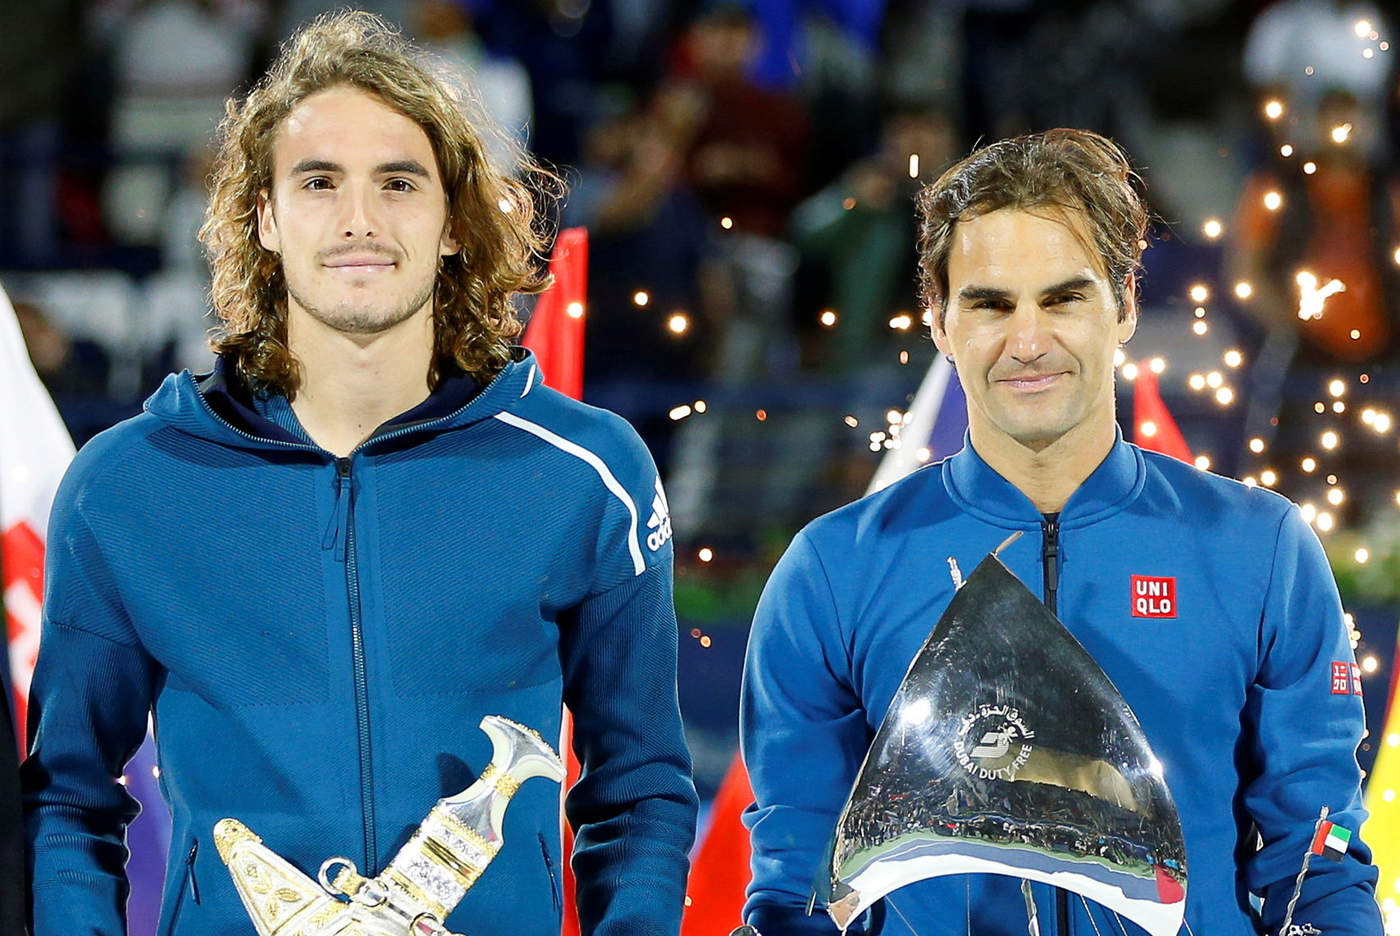 El griego Tsitsipas y el suizo Federer se enfrentaron en la final del Abierto de Dubái.